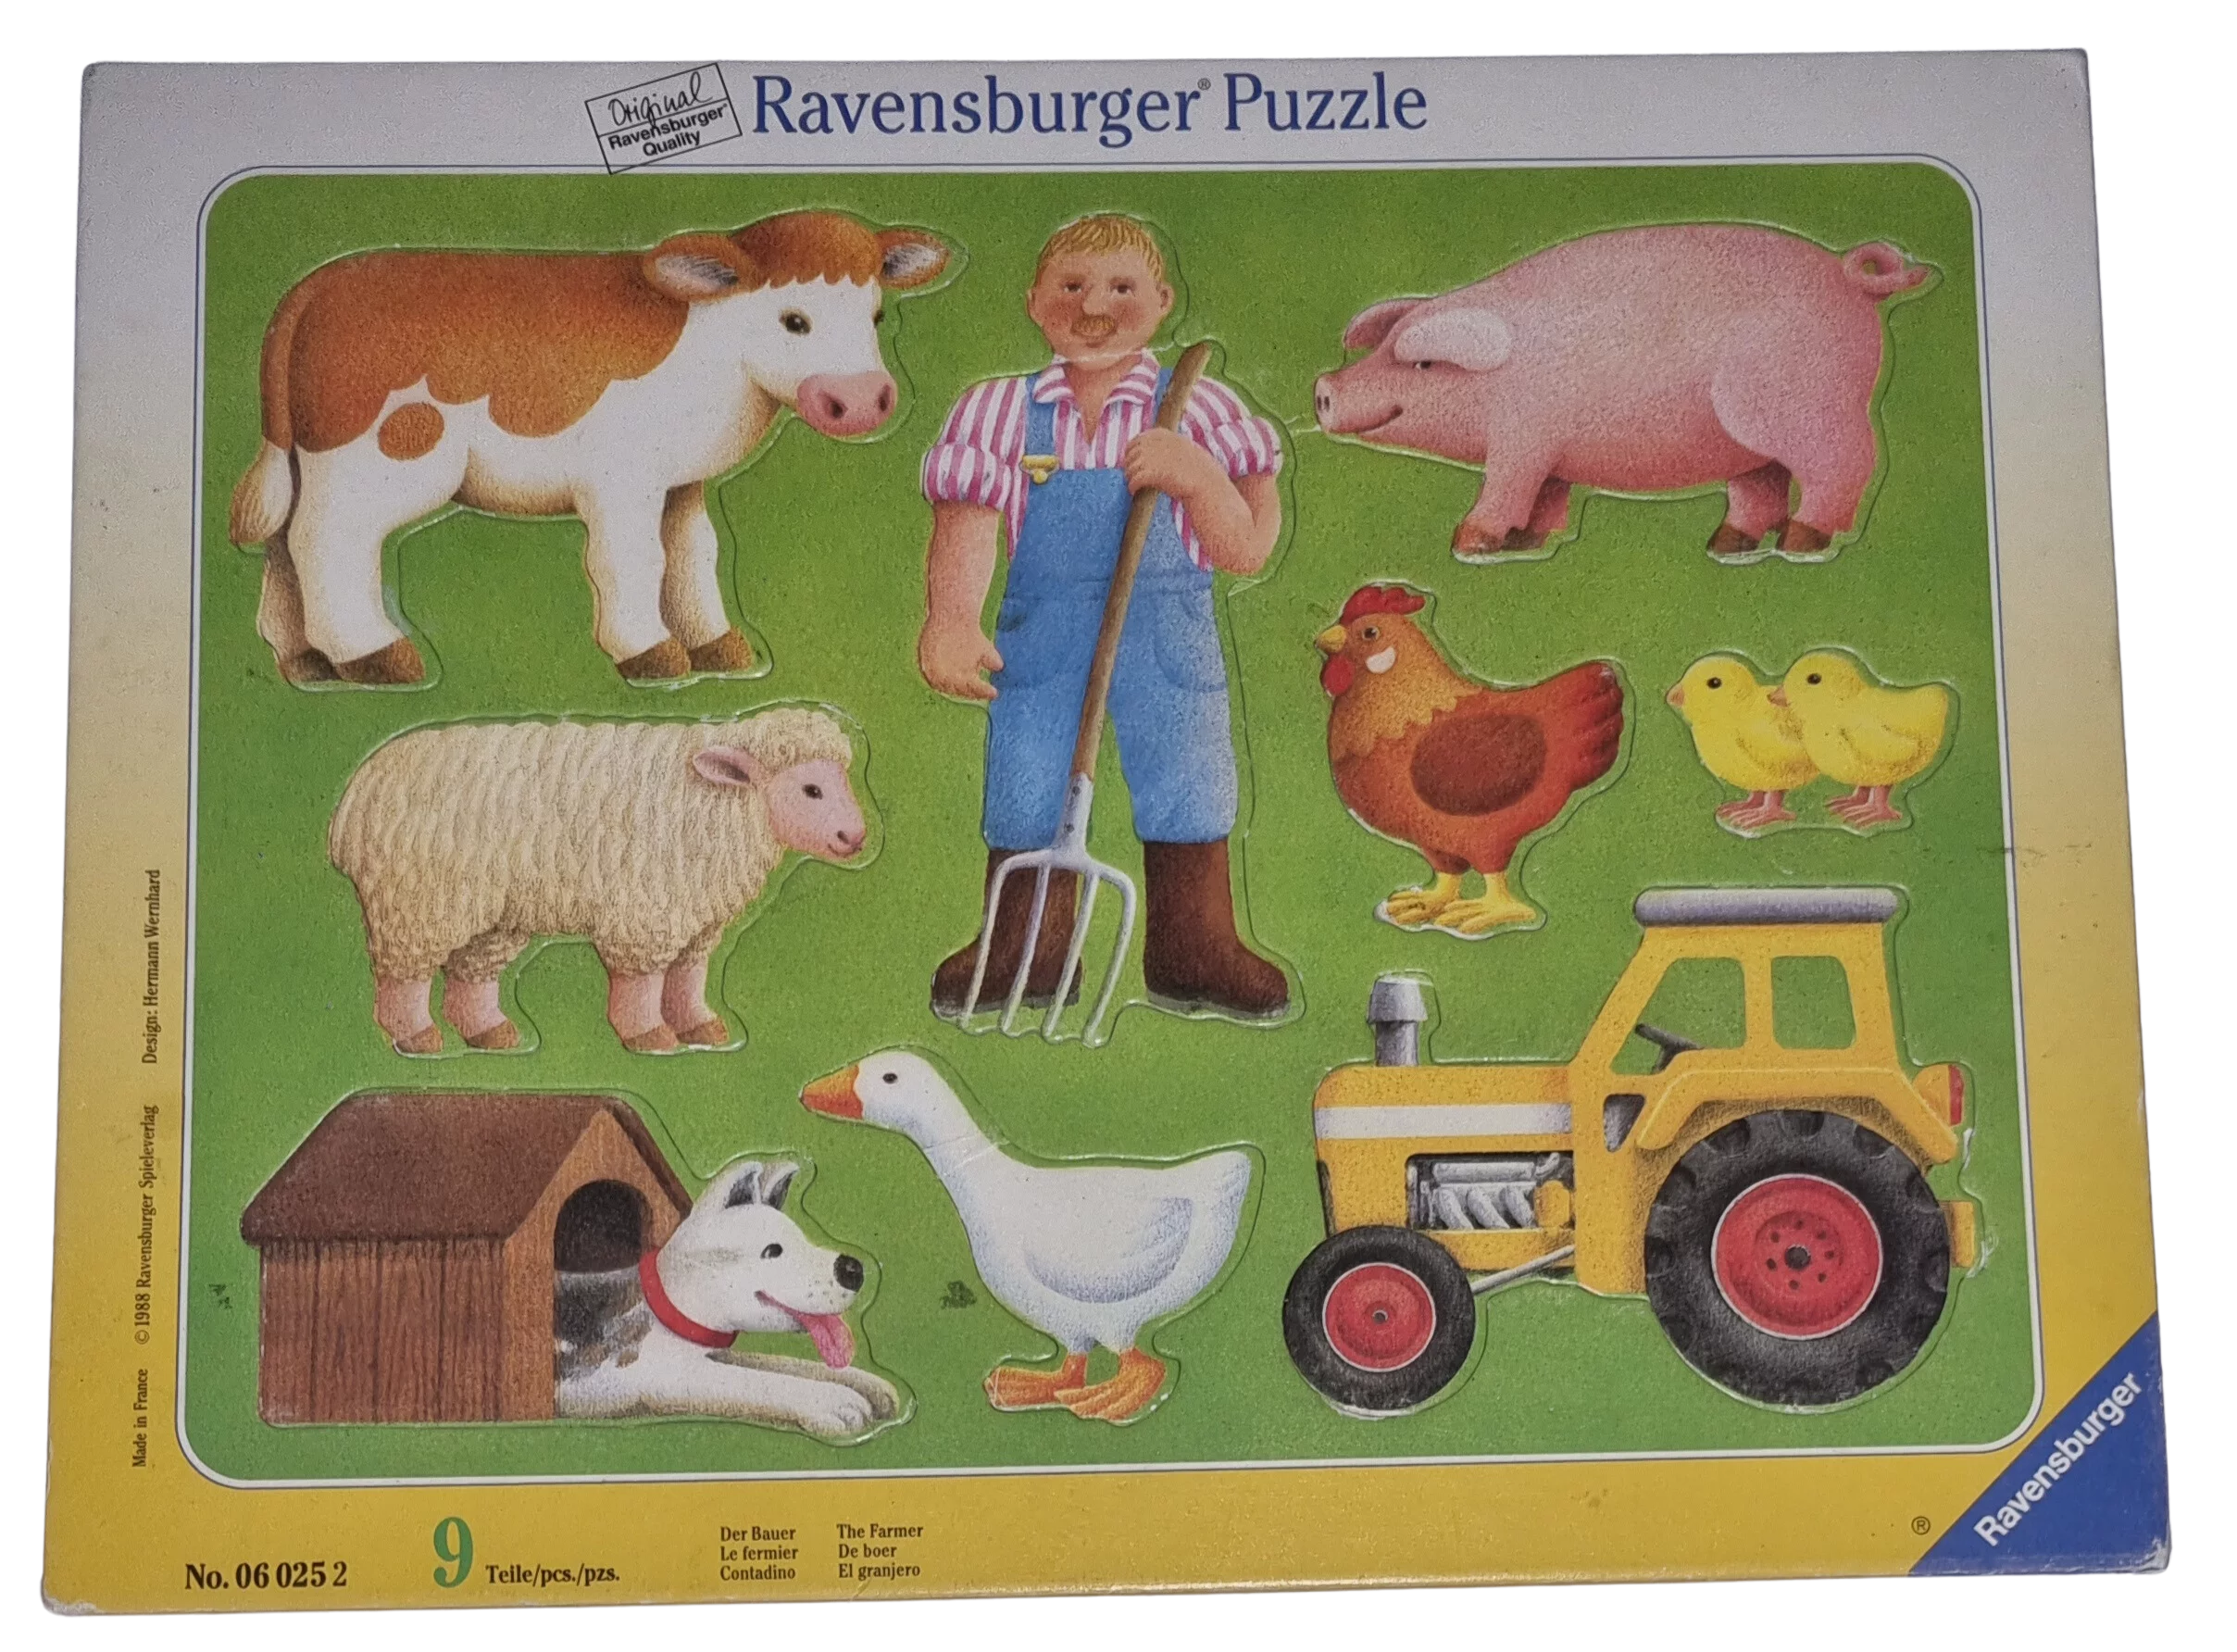 Ravensburger Rahmenpuzzle Der Bauer 9 Teile 060252